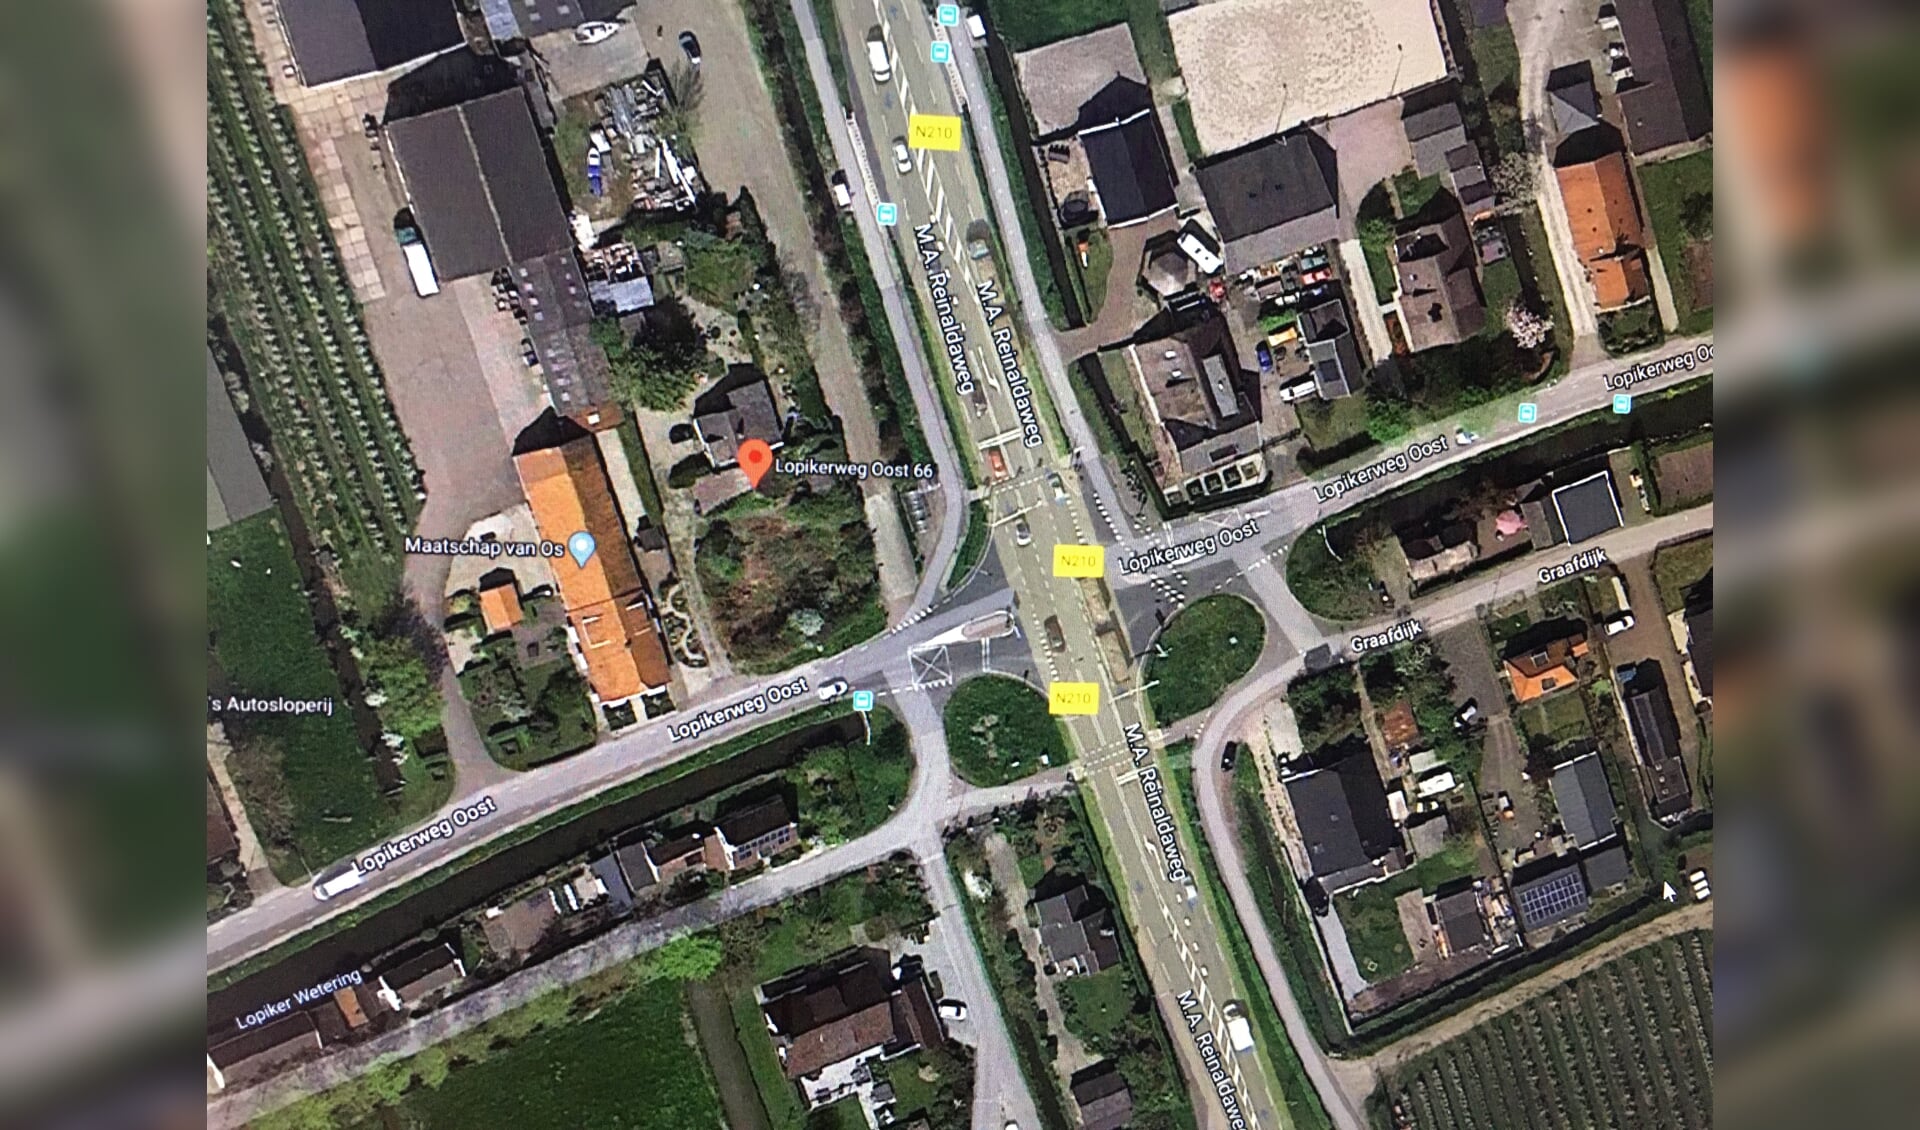 • De betreffende locatie (Lopikerweg Oost 66-67), vlakbij kruispunt De Graaf.